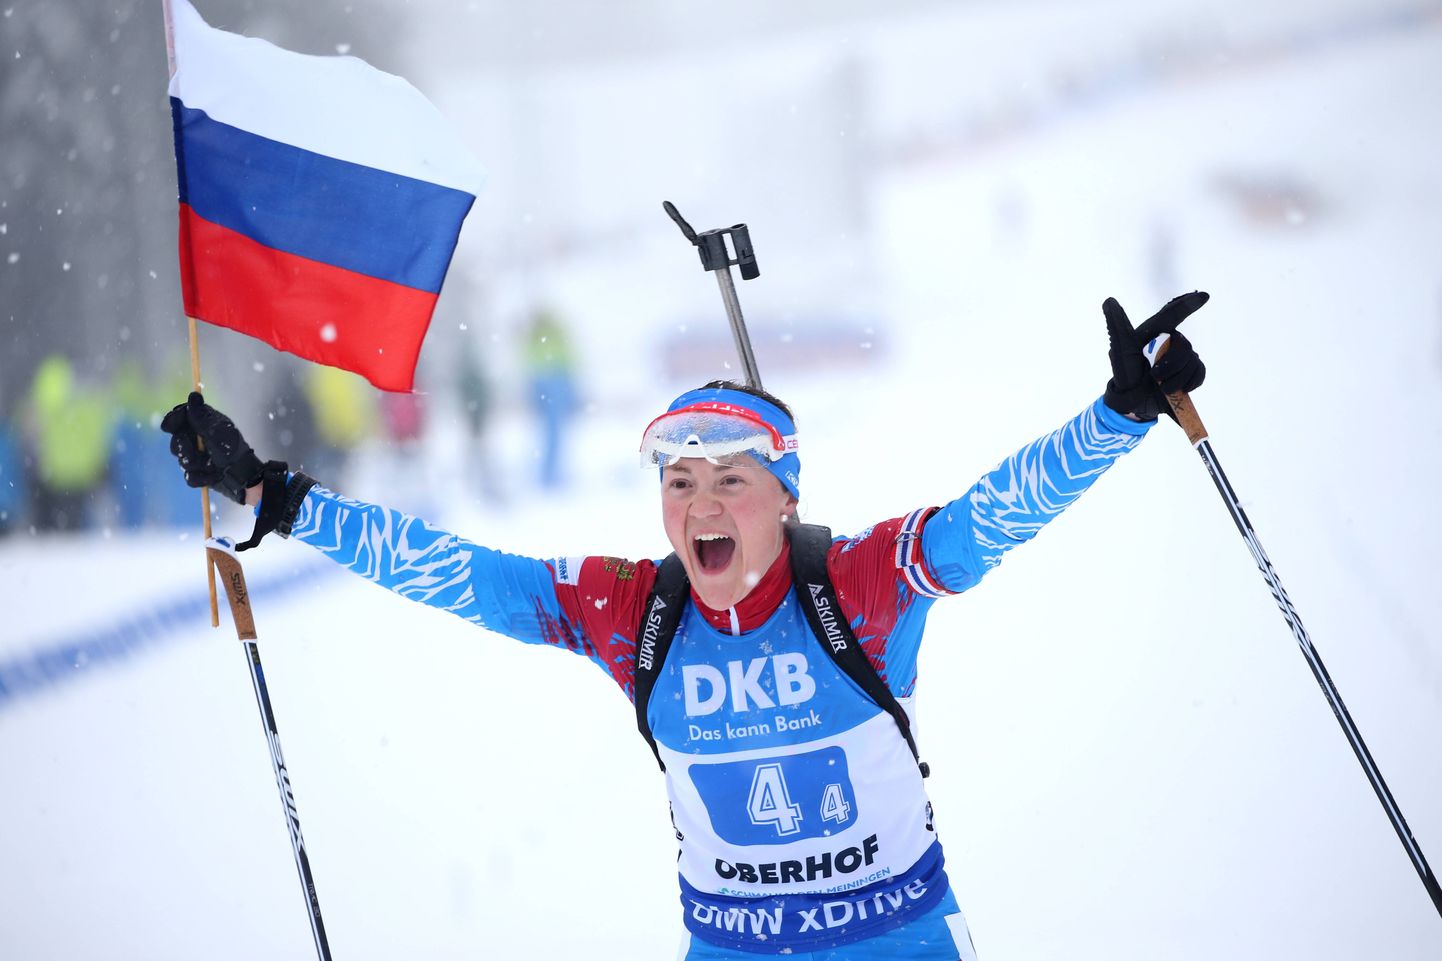 Екатерина Юрлова-Перхт, ведущая спортсменка женской сборной России по биатлону, на этапе КМ в Оберхофе в 2019 году, когда Россия выиграла женскую эстафету. Фотография носит иллюстративный характер.